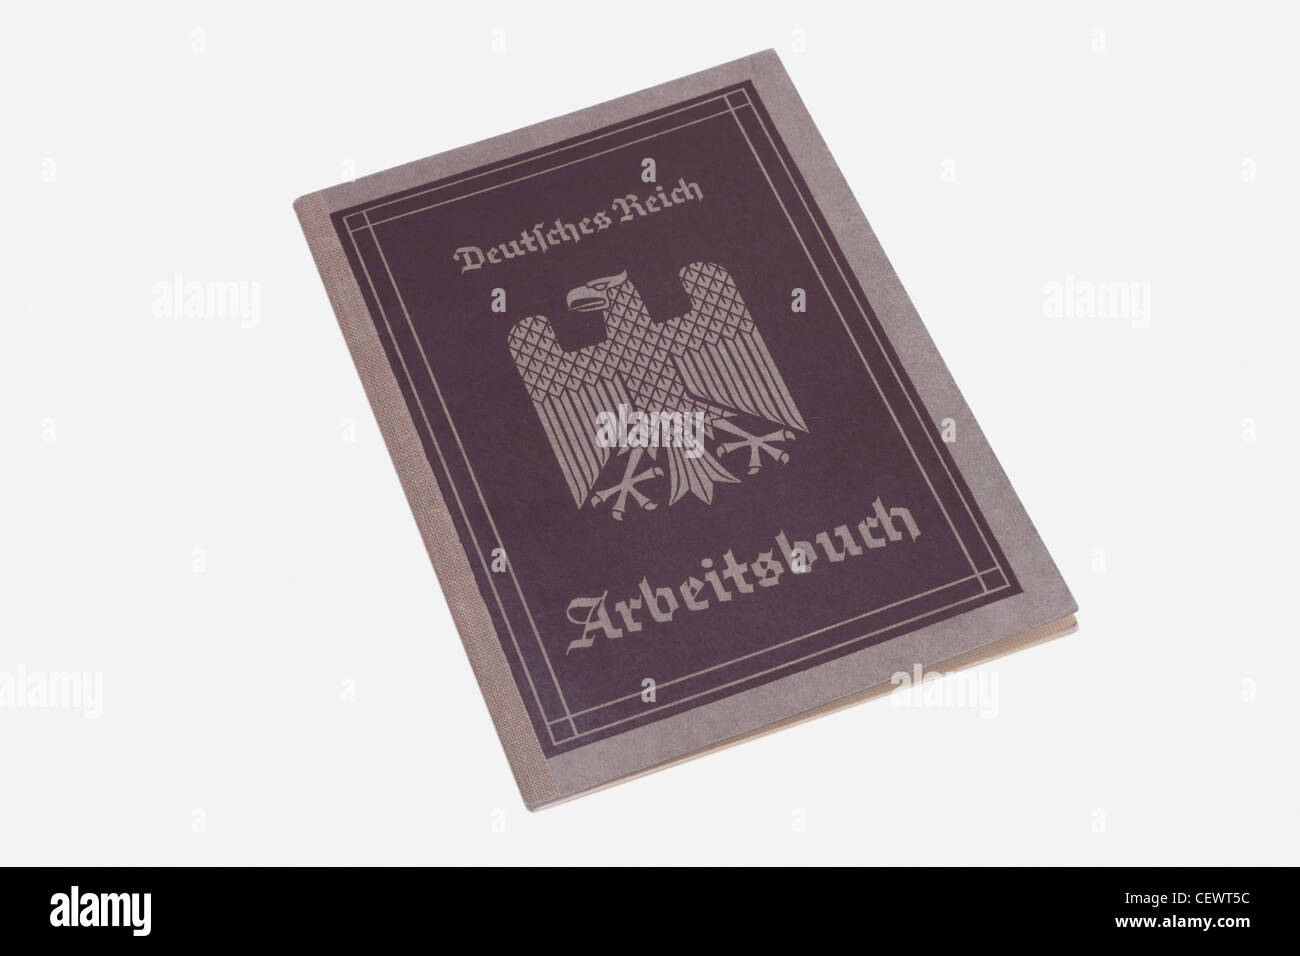 Arbeitsbuch des Deutschen Reiches aus dem Jahre 1935/1936 | Esercizio libro del Reich tedesco dal 1935/1936 Foto Stock